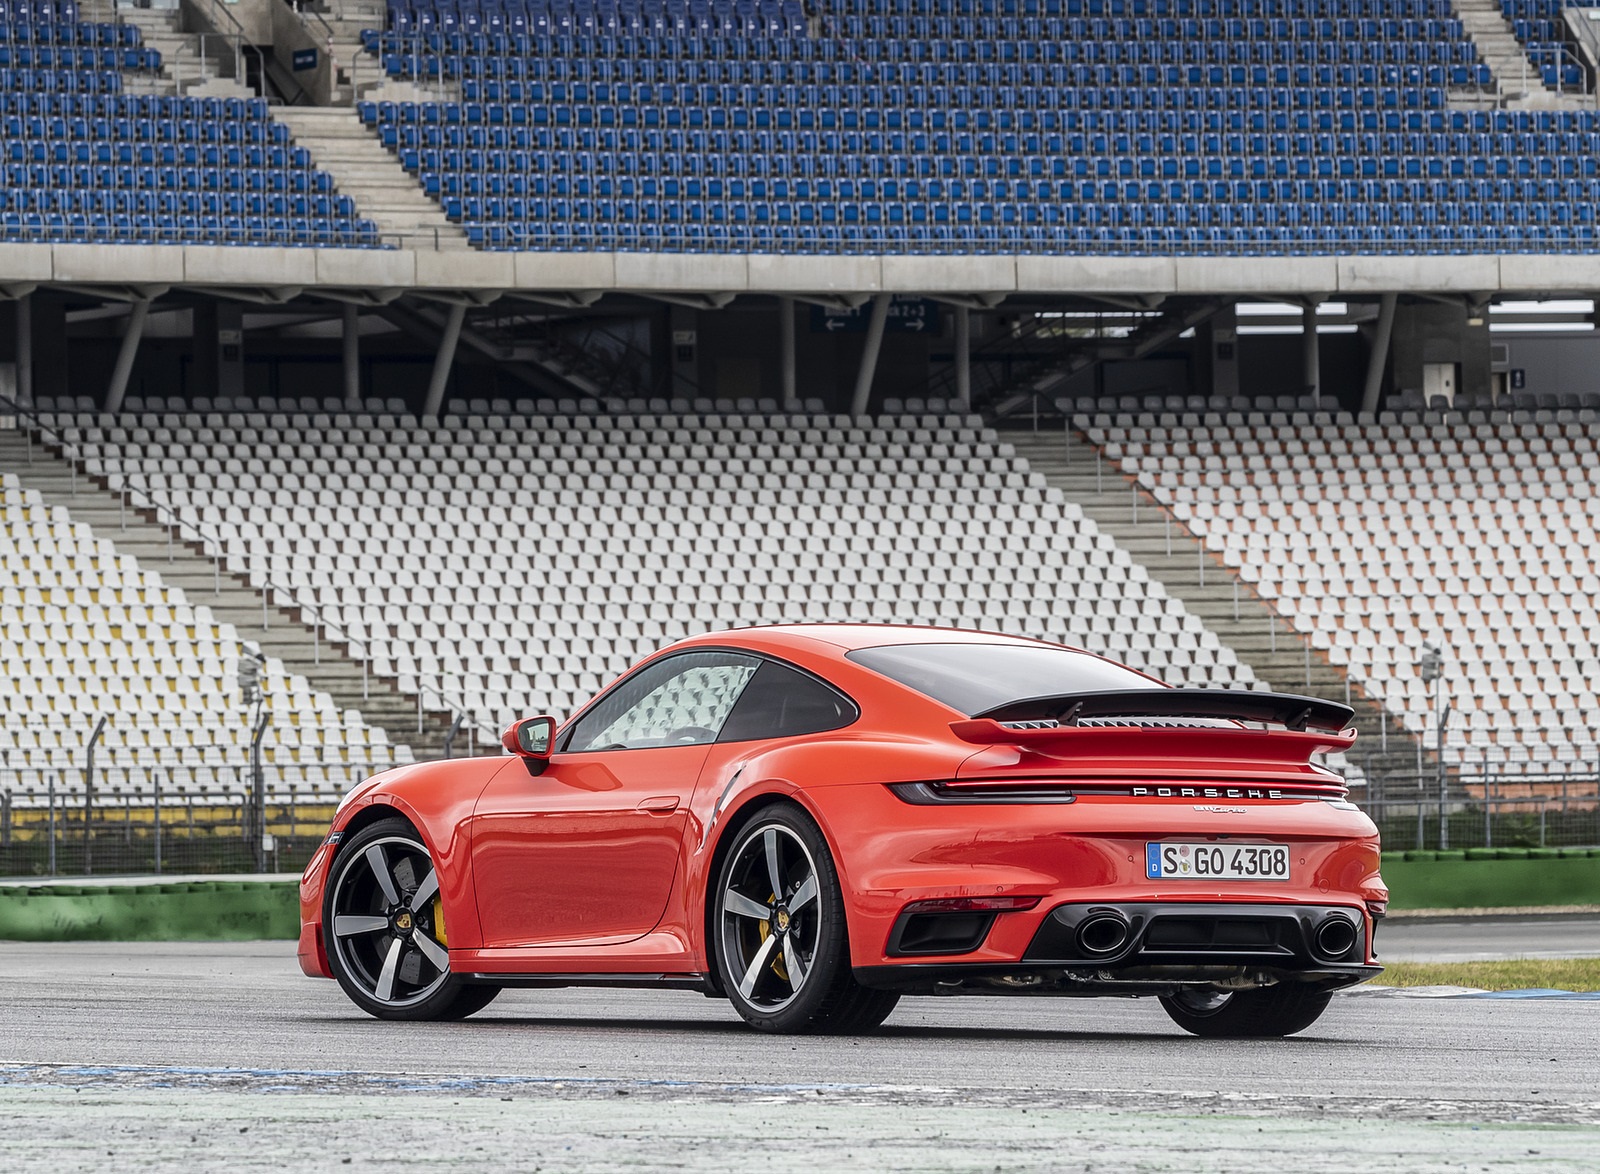 2021 Porsche 911 Turbo (Color: Lava Orange) Rear Three-Quarter Wallpapers  #91 of 225